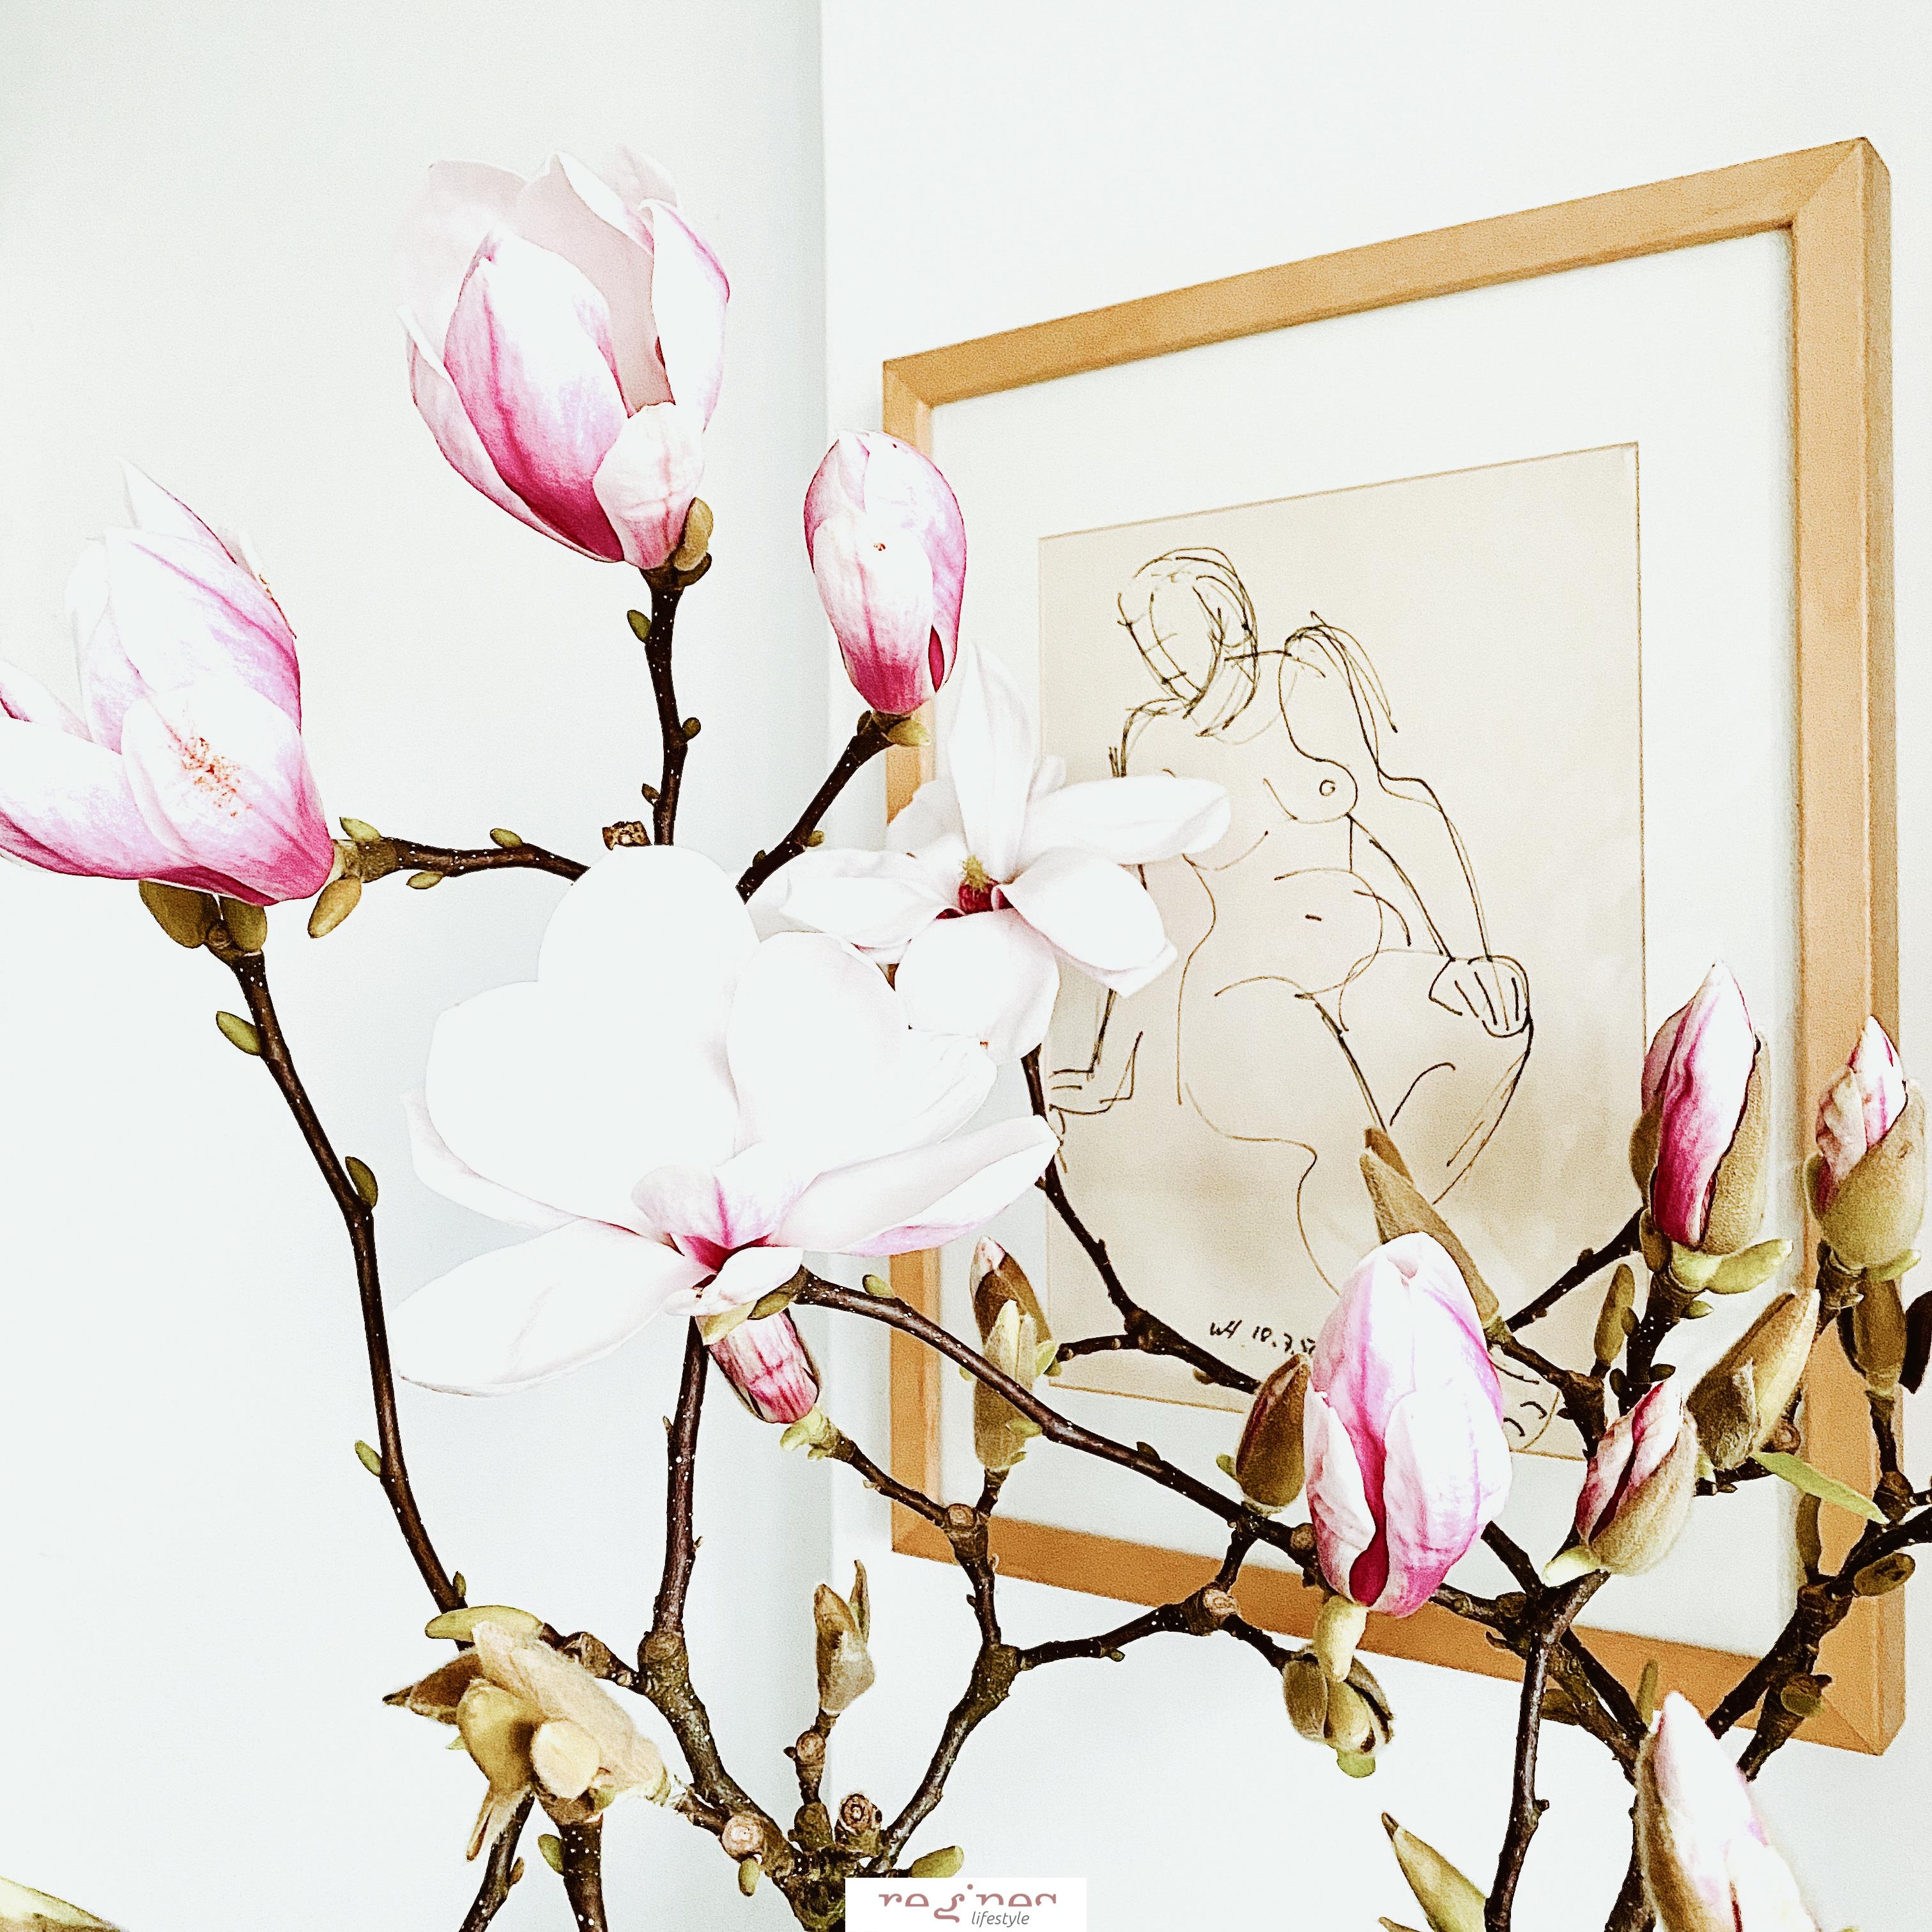 Magnolie trifft Kunst ...
#skandistyle #freshflowers #magnolie #whiteliving #akt #art #blumenliebe 